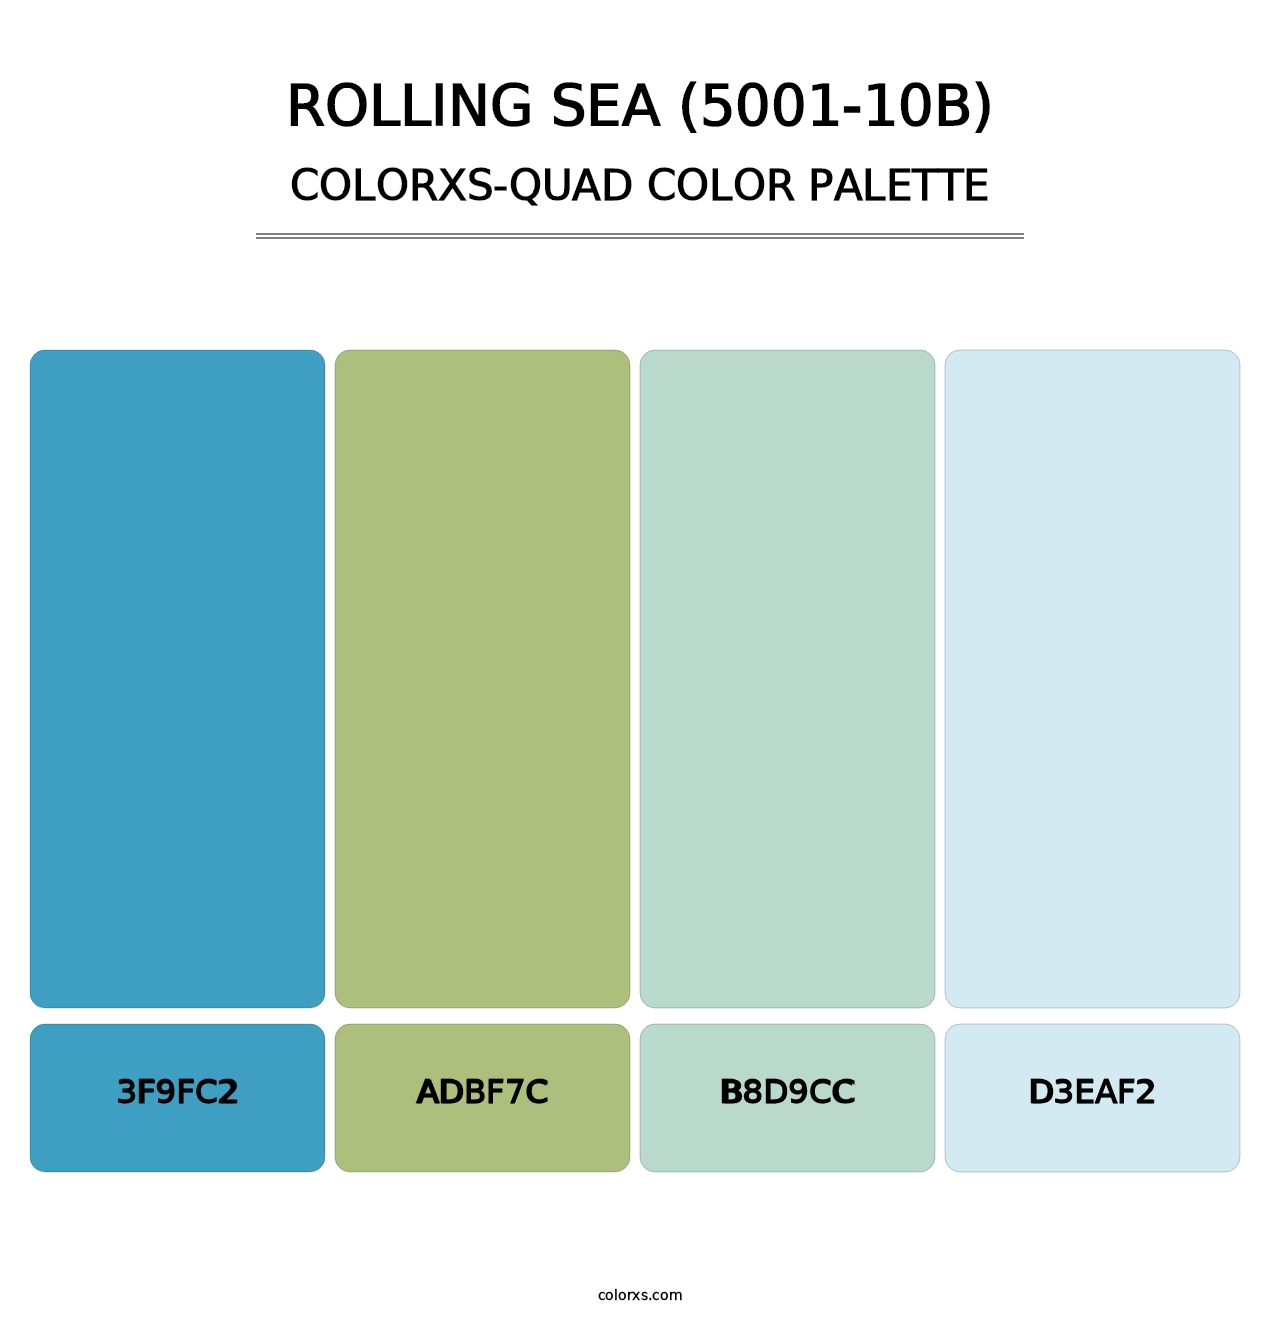 Rolling Sea (5001-10B) - Colorxs Quad Palette